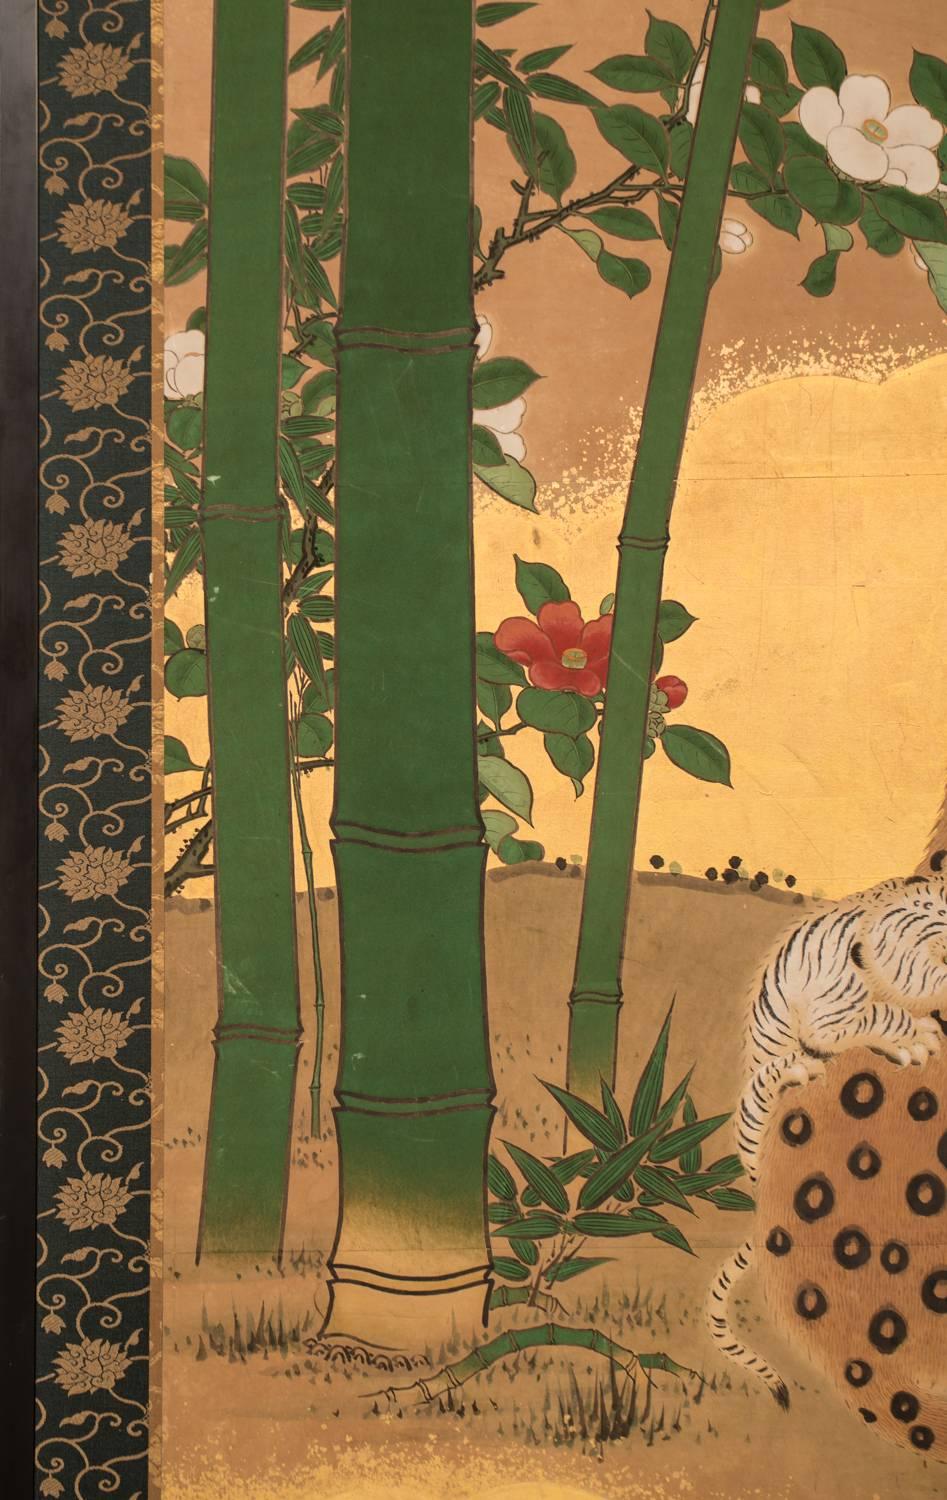 Nuages dorés sur feuille d'or avec camélia au bord de la rivière.
Dans l'histoire, les artistes japonais n'ont pas vu de léopards ou de tigres dans la vie réelle car ces animaux n'étaient pas originaires du Japon, ils vivaient en Chine. Les